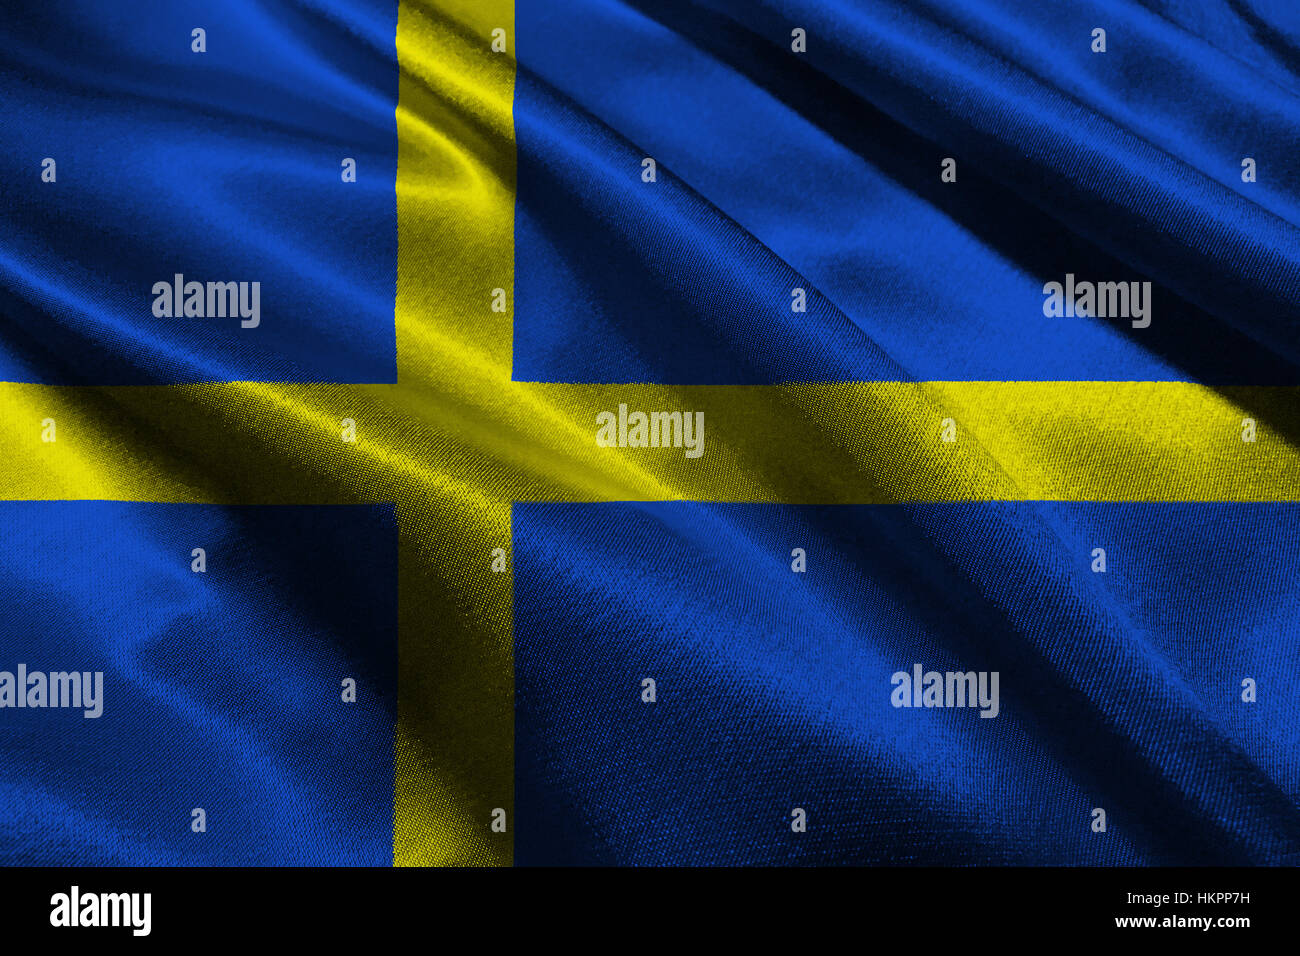 Sweden national flag 3D illustration symbol. Sweden flag Stock Photo